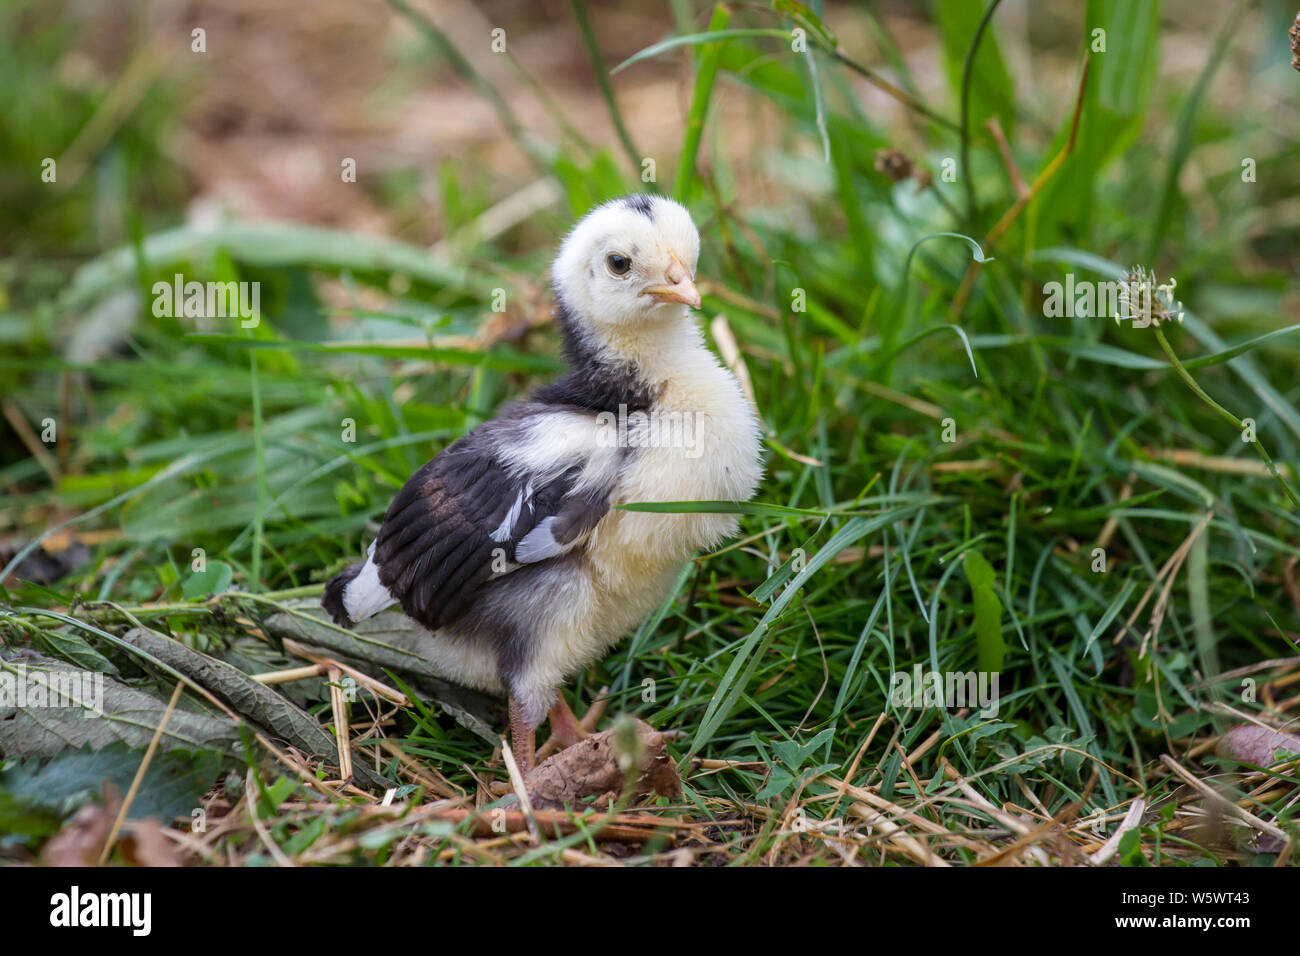 Steinhendl/Stoapiperl Junge, einer vom Aussterben bedrohten Rasse Huhn aus Österreich Stockfoto